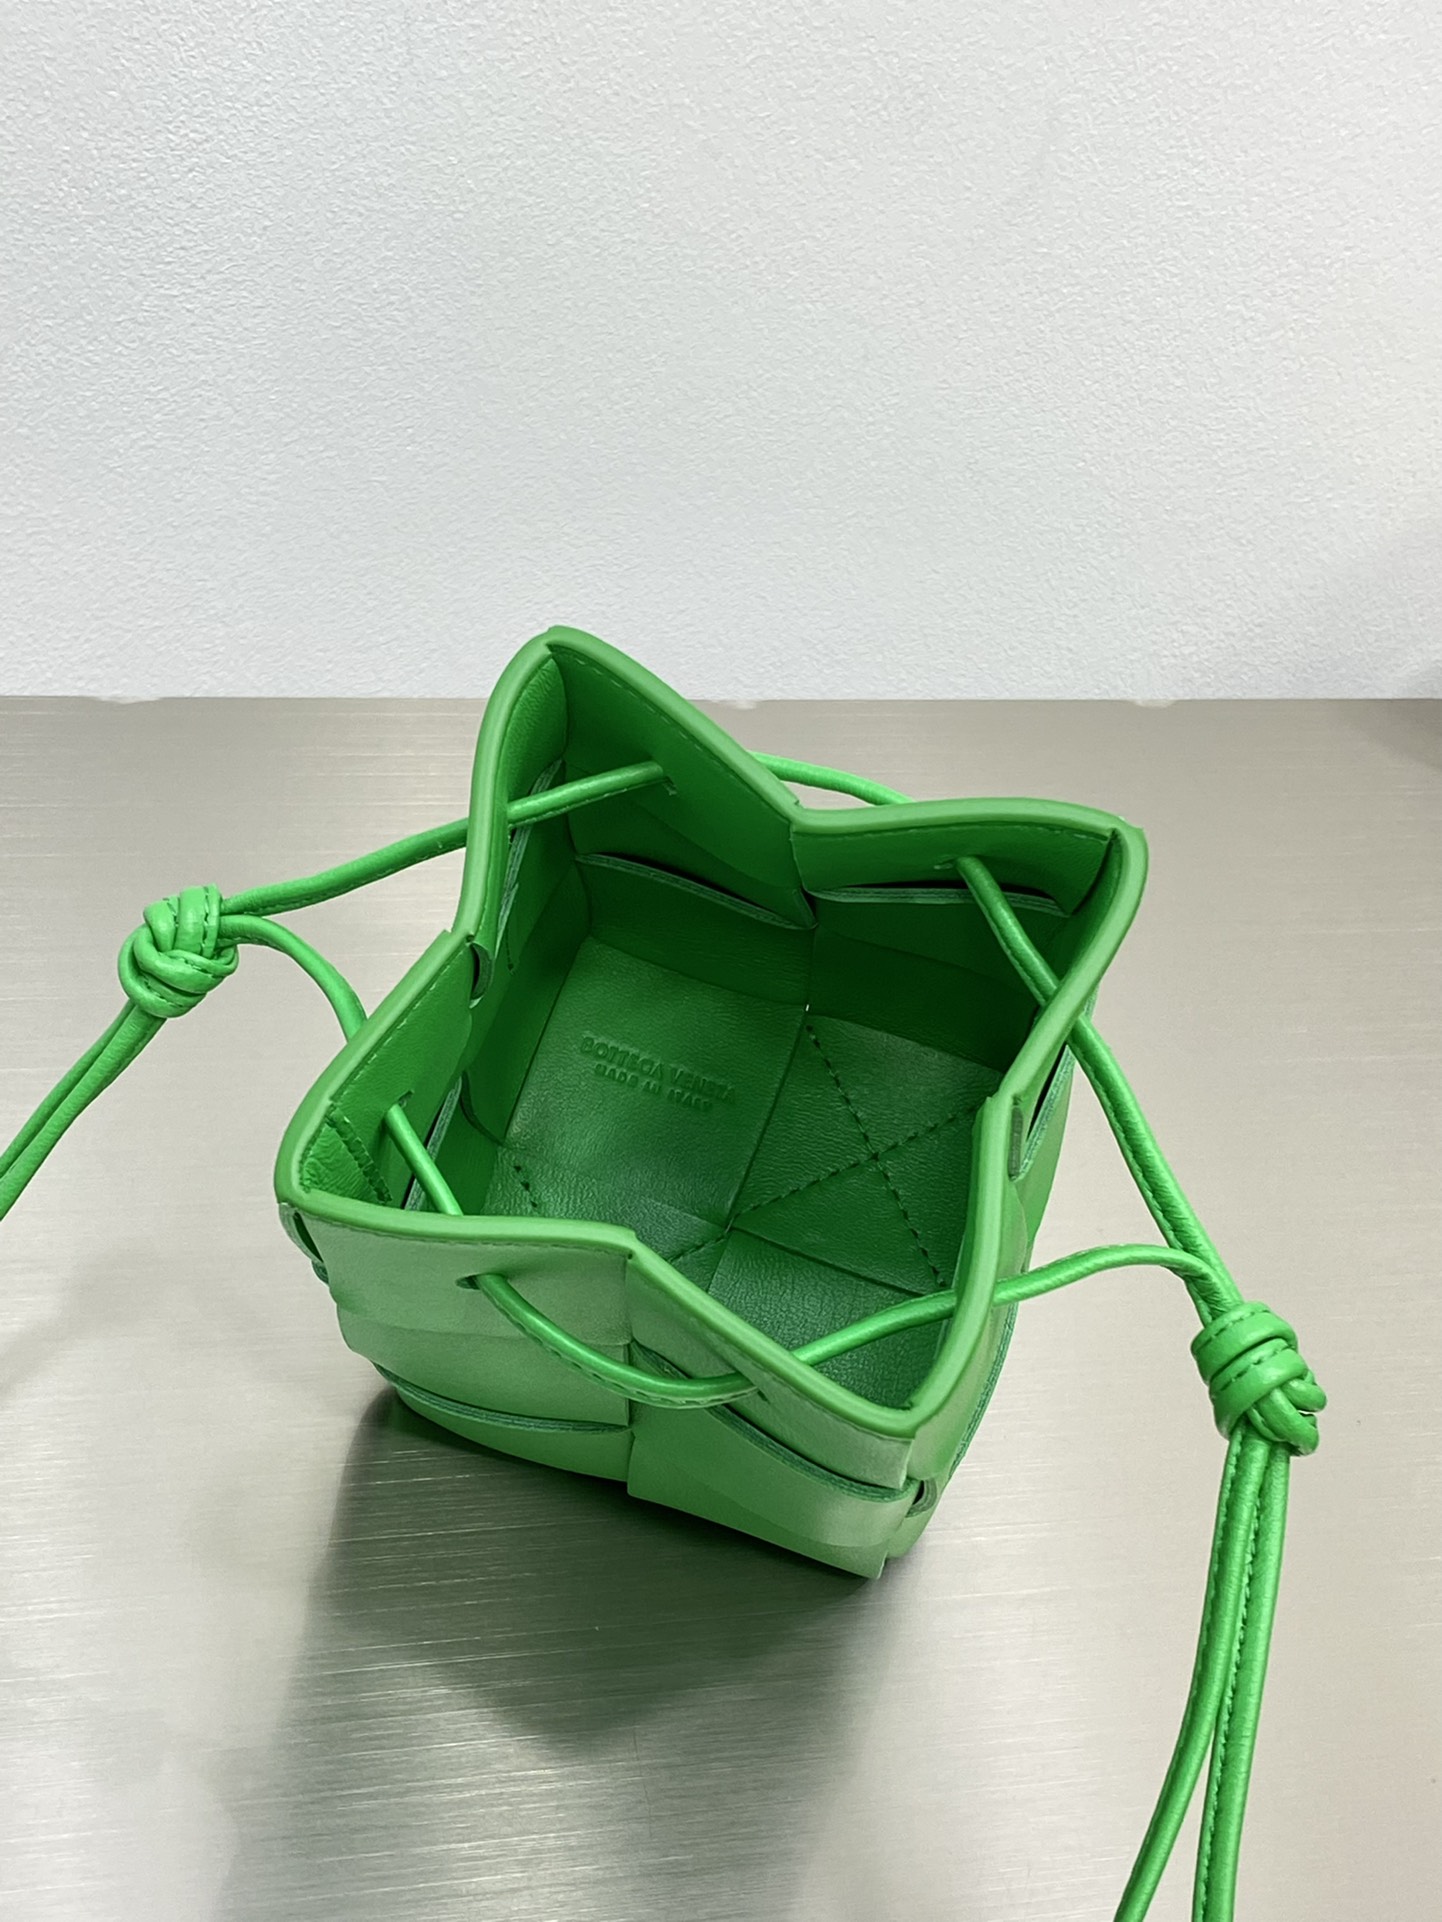 Bv 新款Cassette 水桶包 小号 水桶包大方格的设计 经典的编织元素 14cm 鹦鹉绿